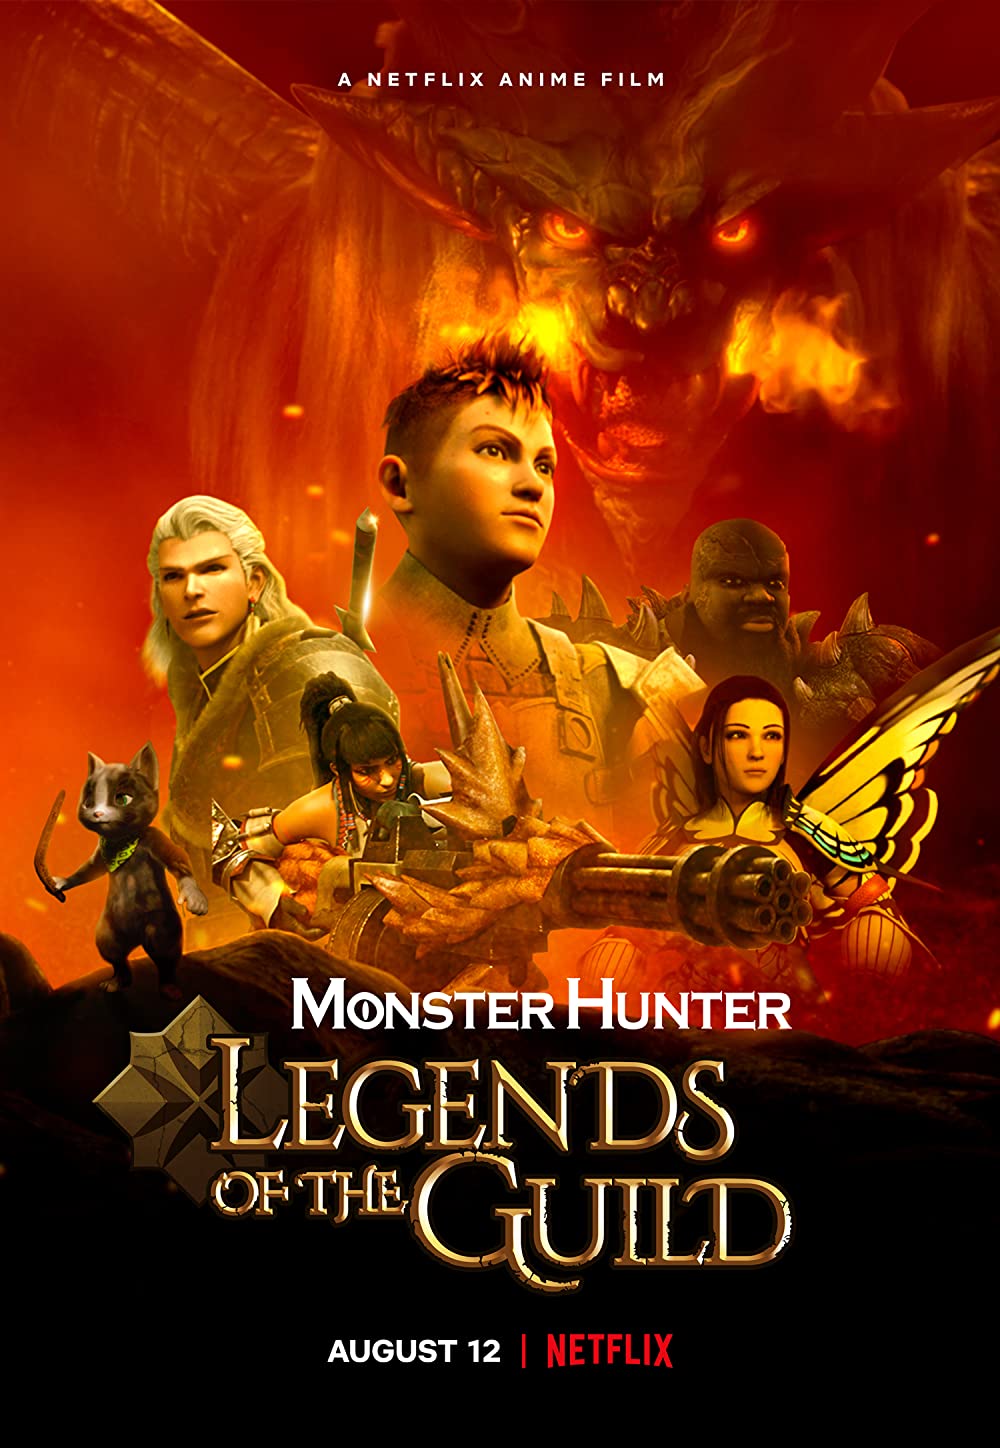 Filmbeschreibung zu Monster Hunter: Legends of the Guild